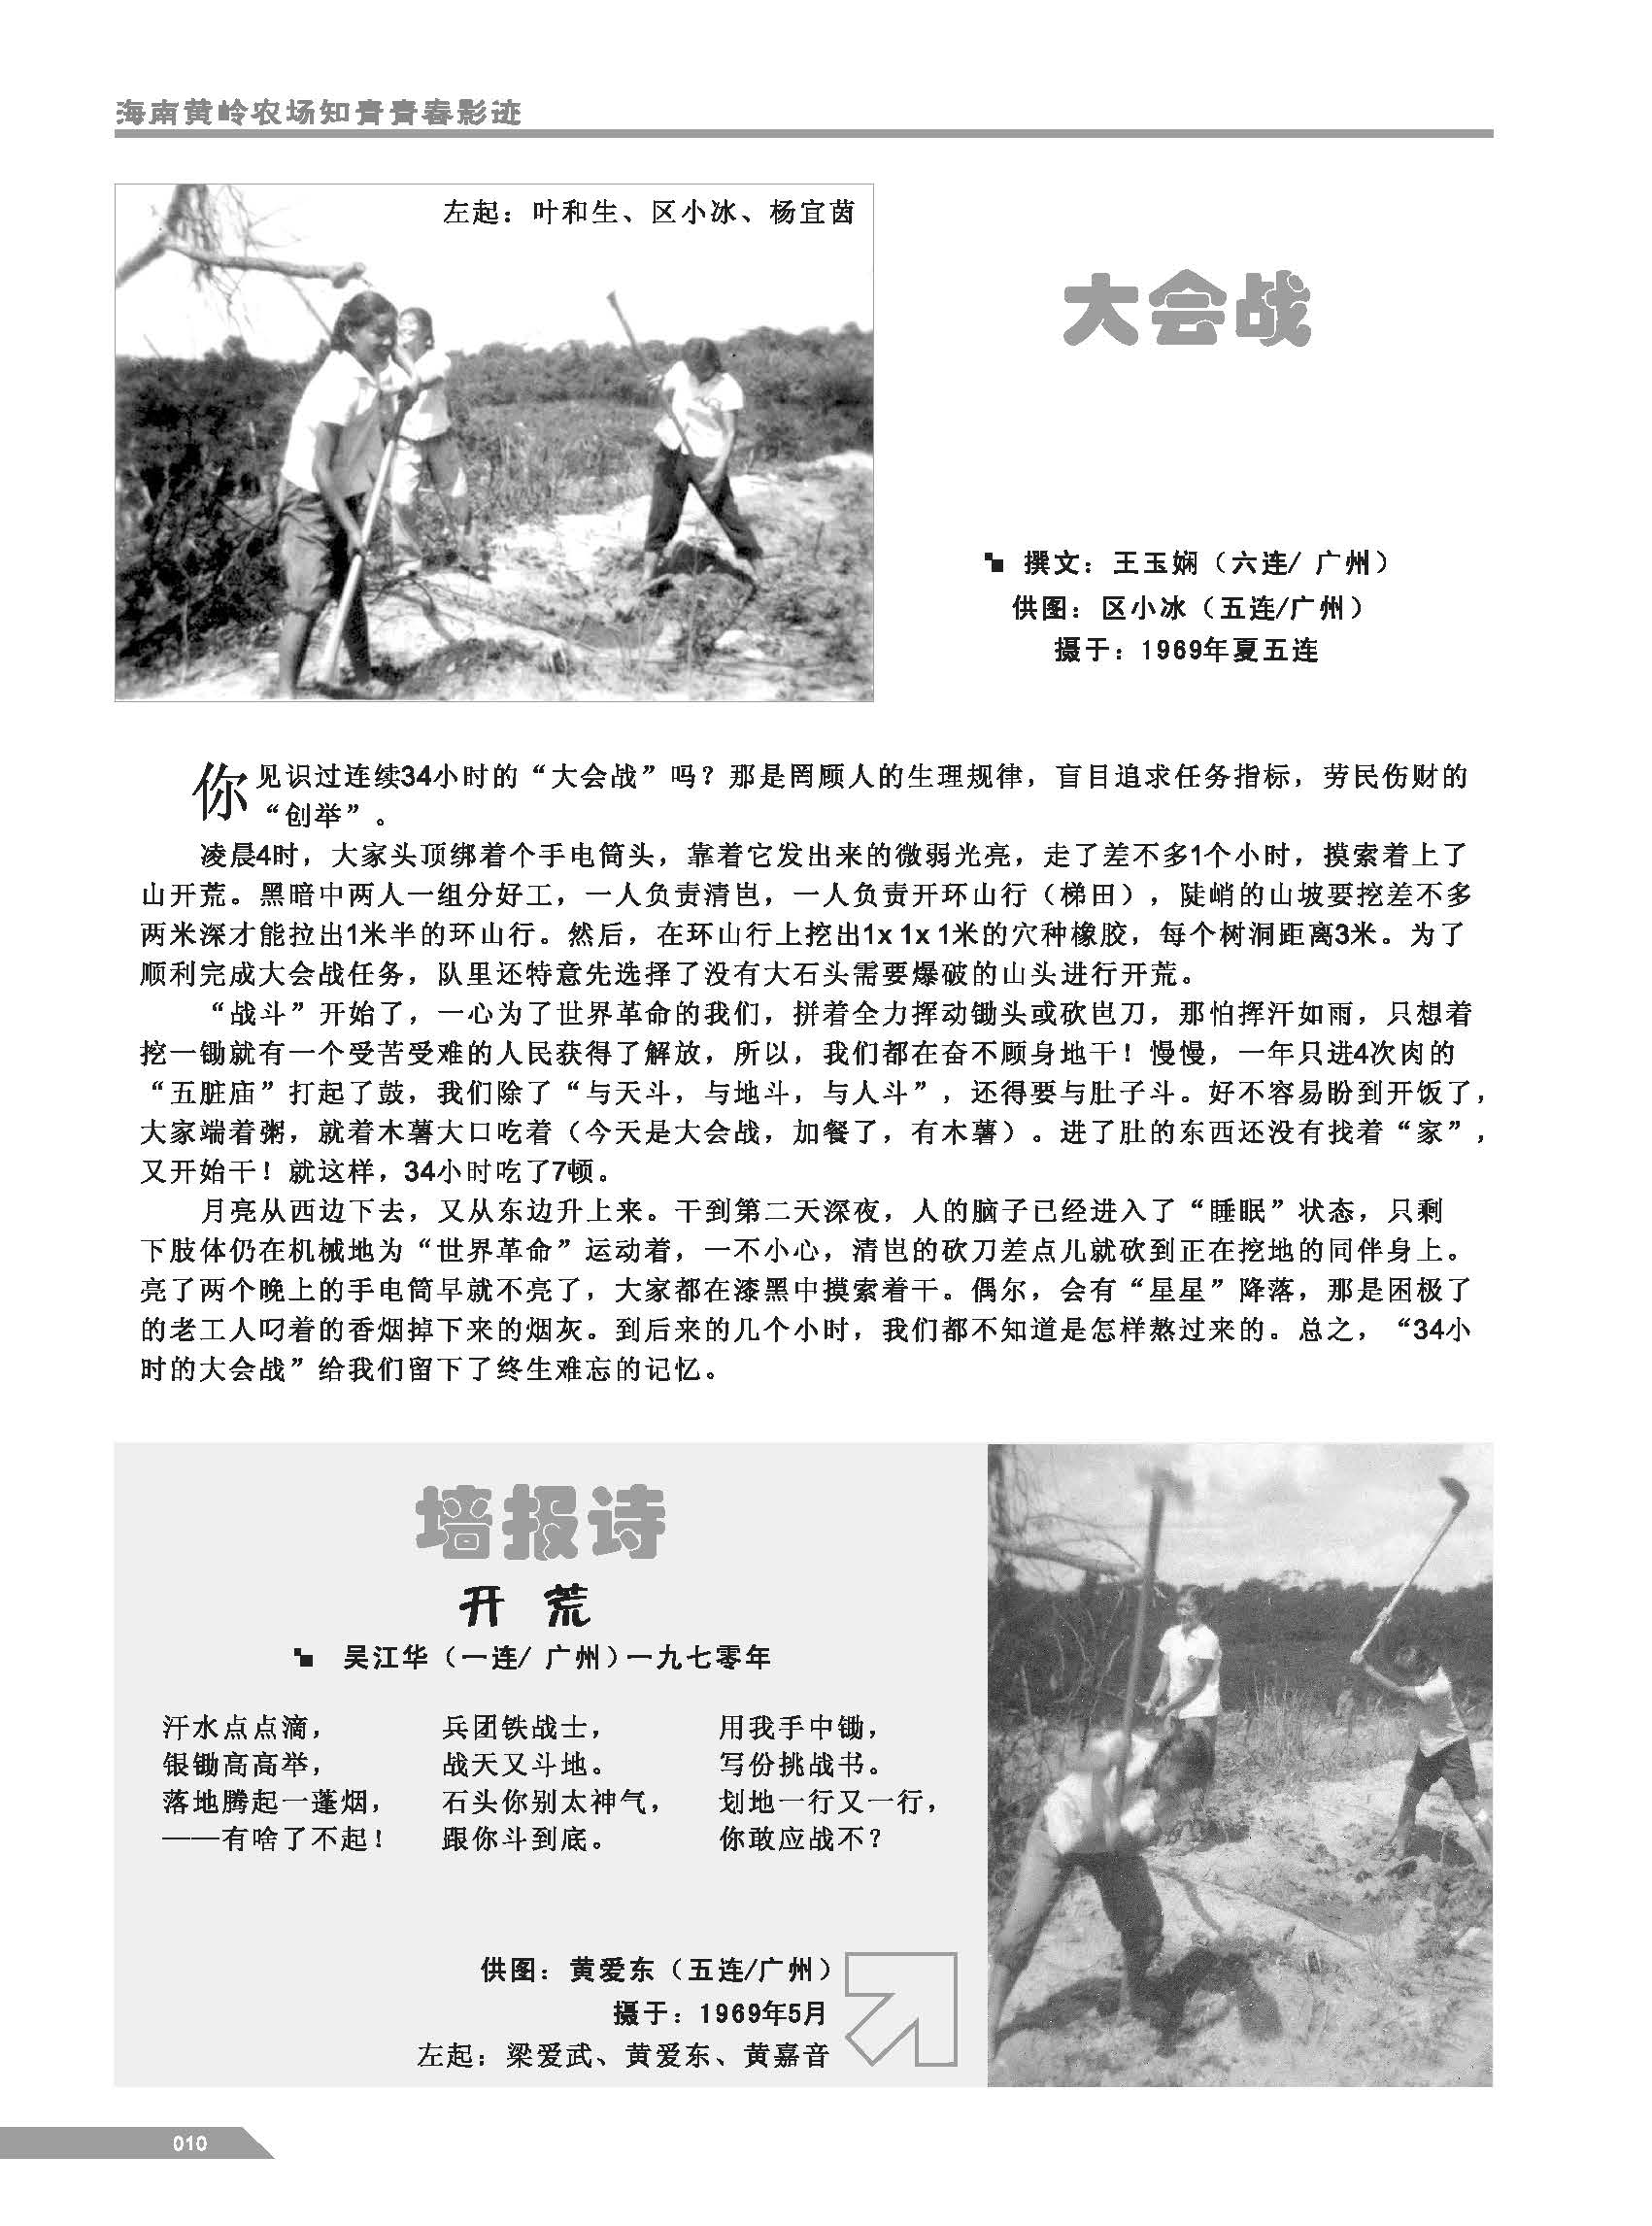 黄岭农场青春影踪内页9-16 2.jpg